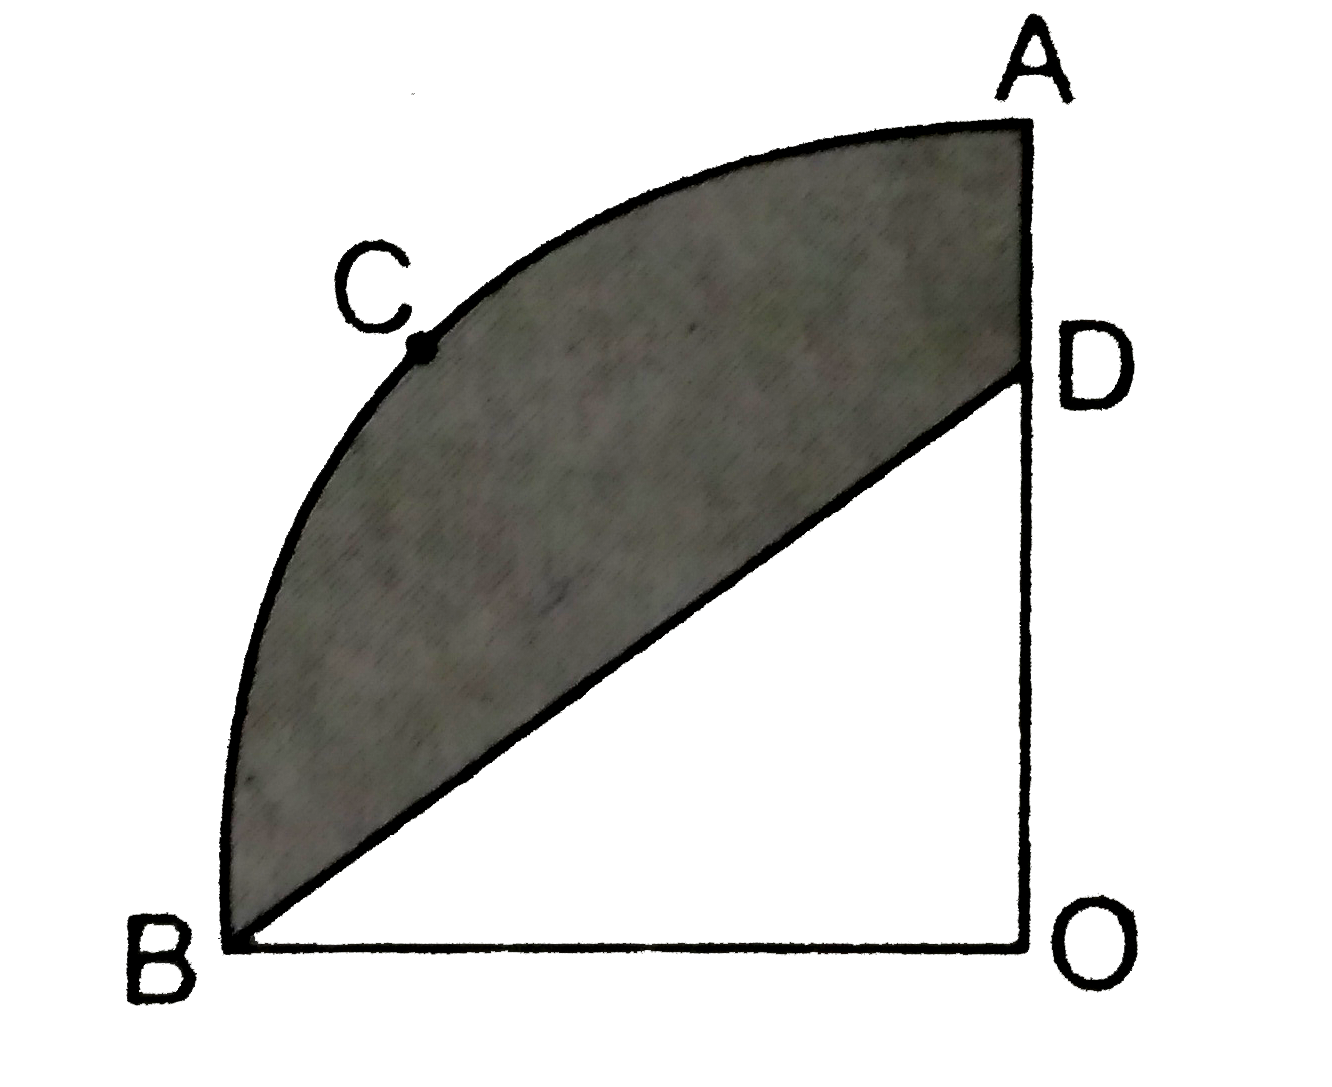 आकृति  में , OACB केन्द्र  O  और  त्रिज्या  3 .5 सेमी  वाले  एक वृत  का चतुर्थाश  है । यदि  OD =2  सेमी  है तो  निम्नलिखित  के क्षेत्रफल  ज्ञात कीजिए    (i )  चतुर्थाश  OACB ,    (ii ) छायांकित  भाग  ।